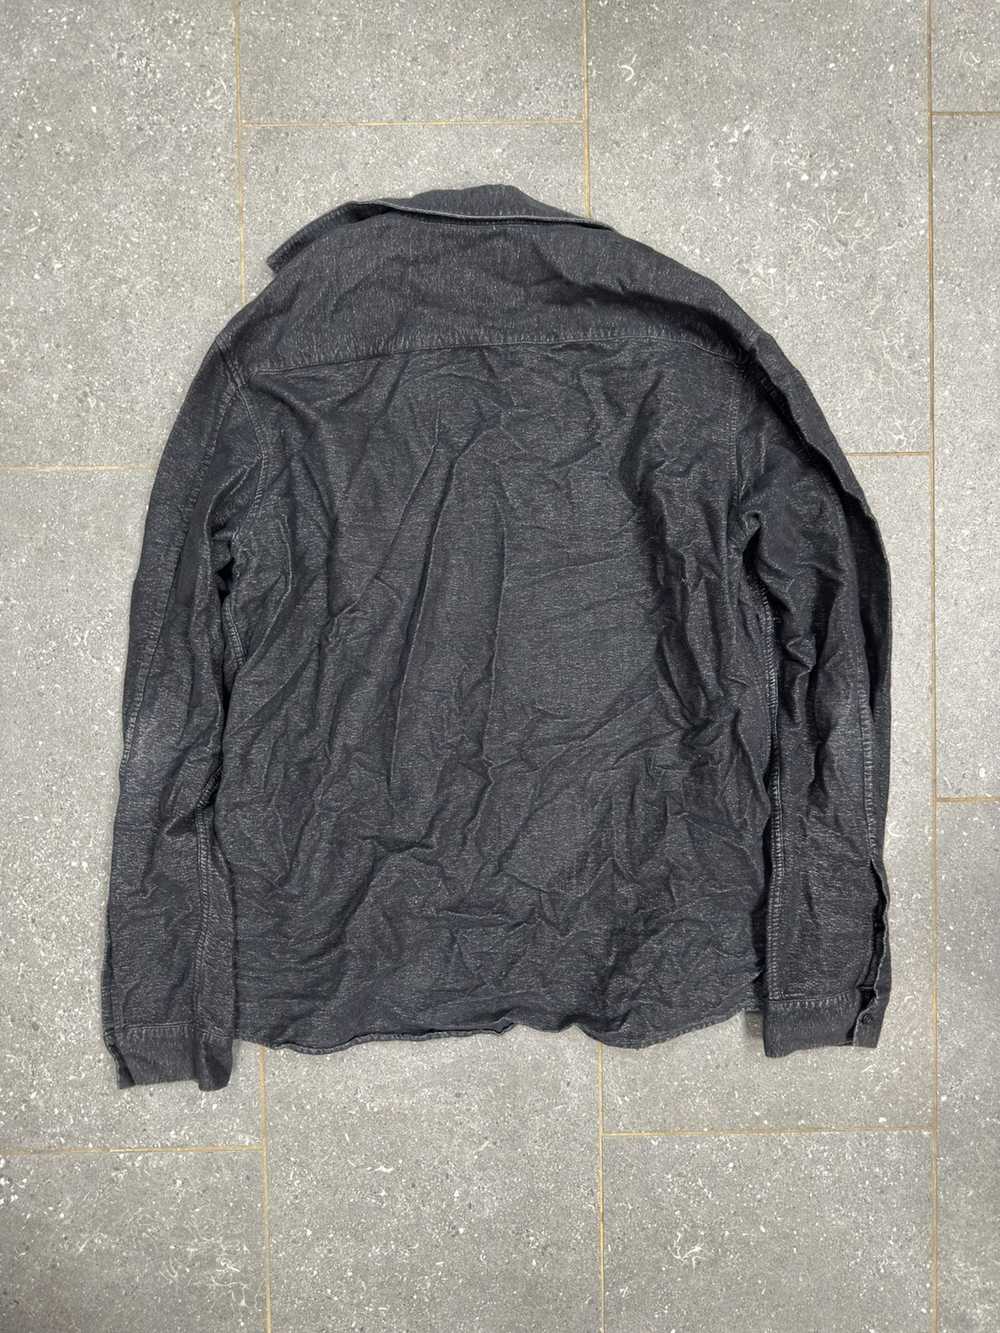 Cos Cos Flannel Black Shirt, L - image 4